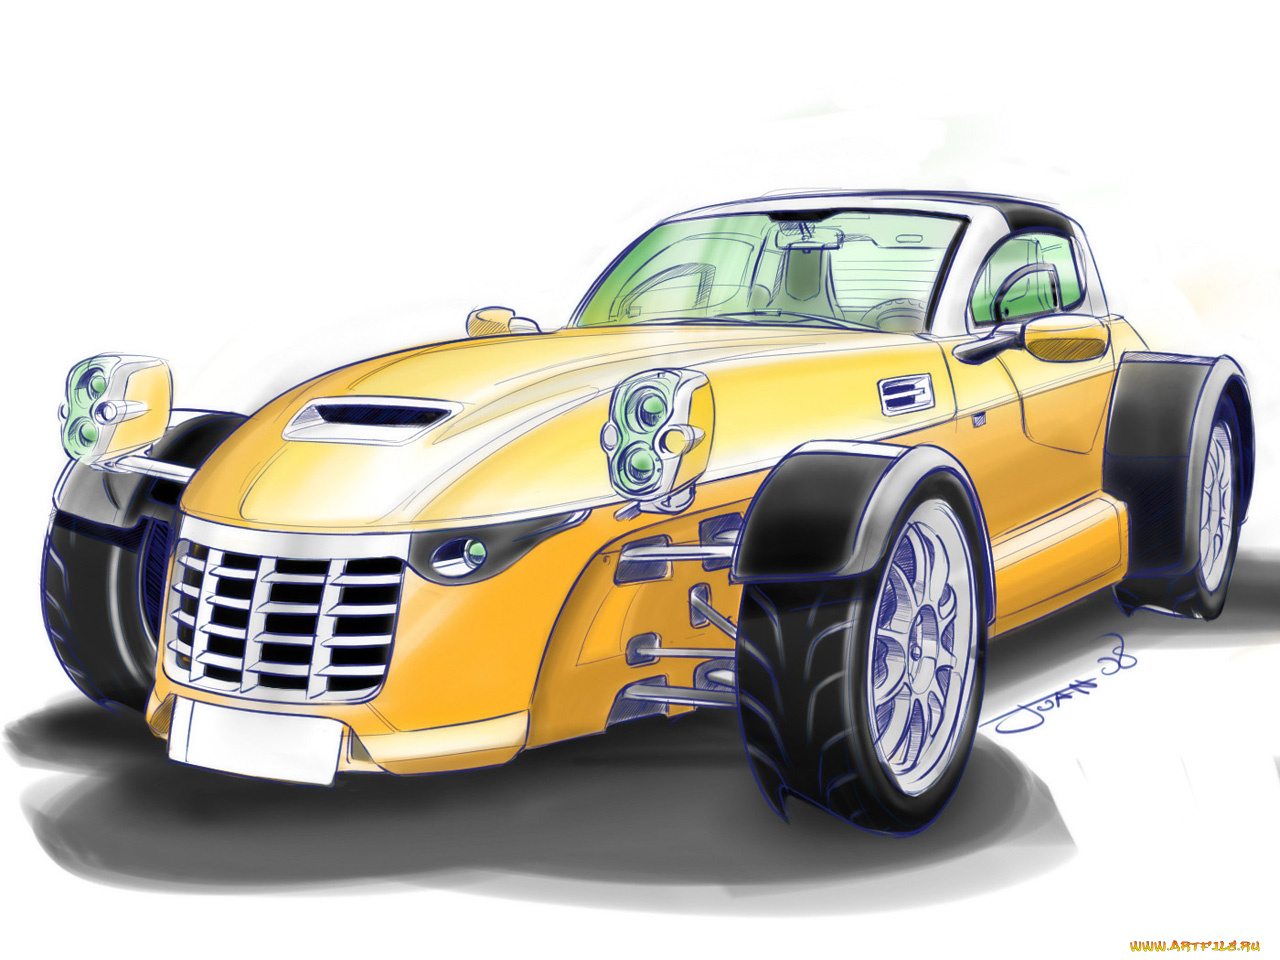 2008, ifr, aspid, автомобили, рисованные